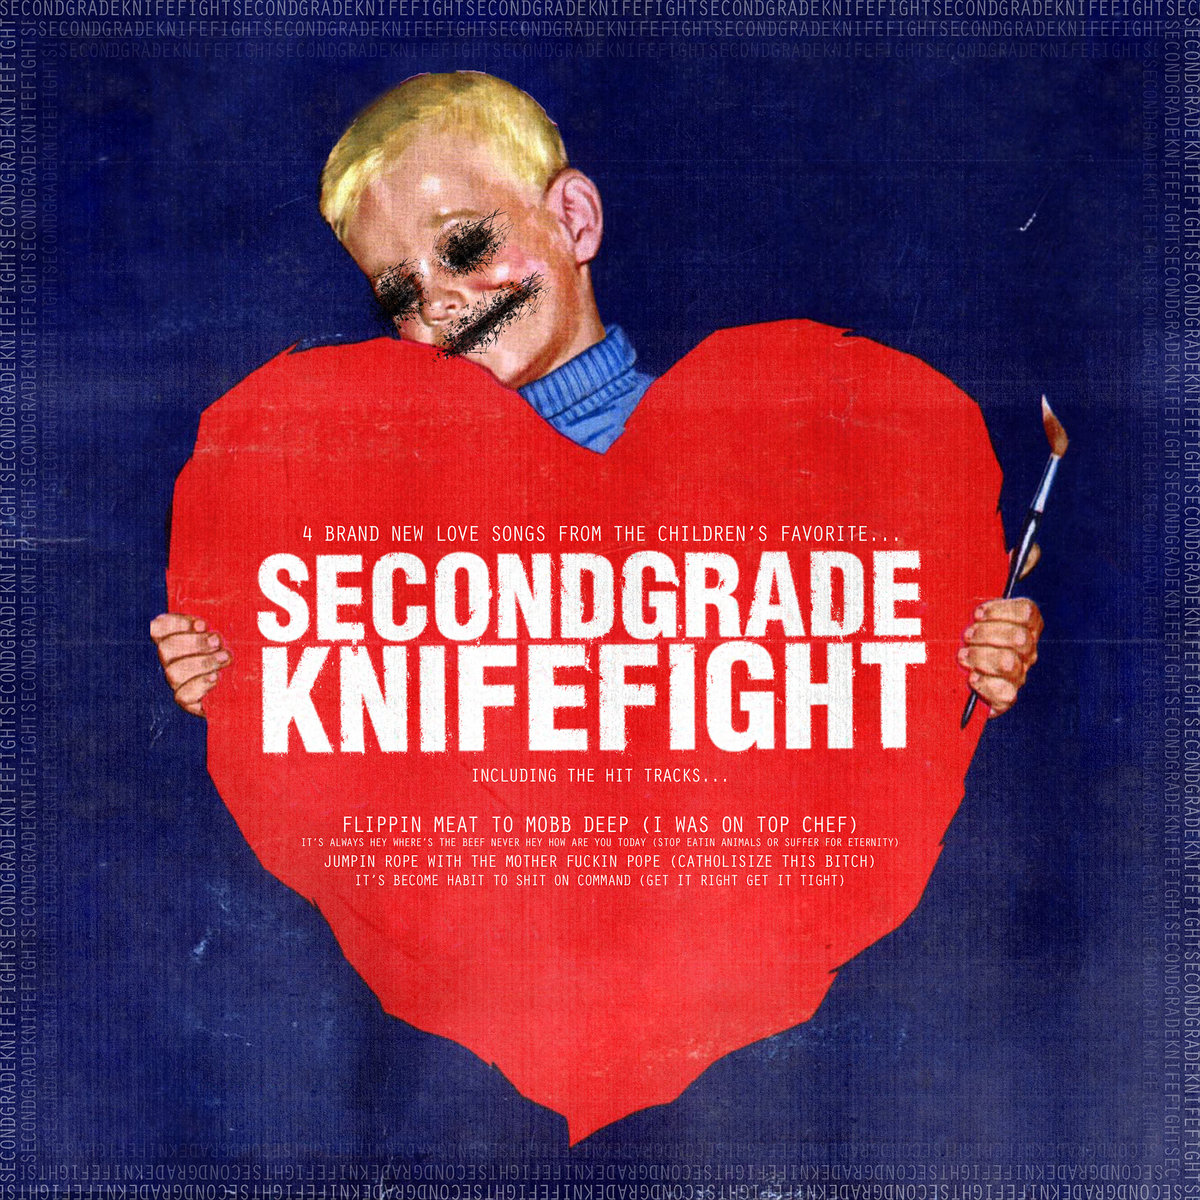 SECONDGRADEKNIFEFIGHT - Pg4: Love Songs cover 